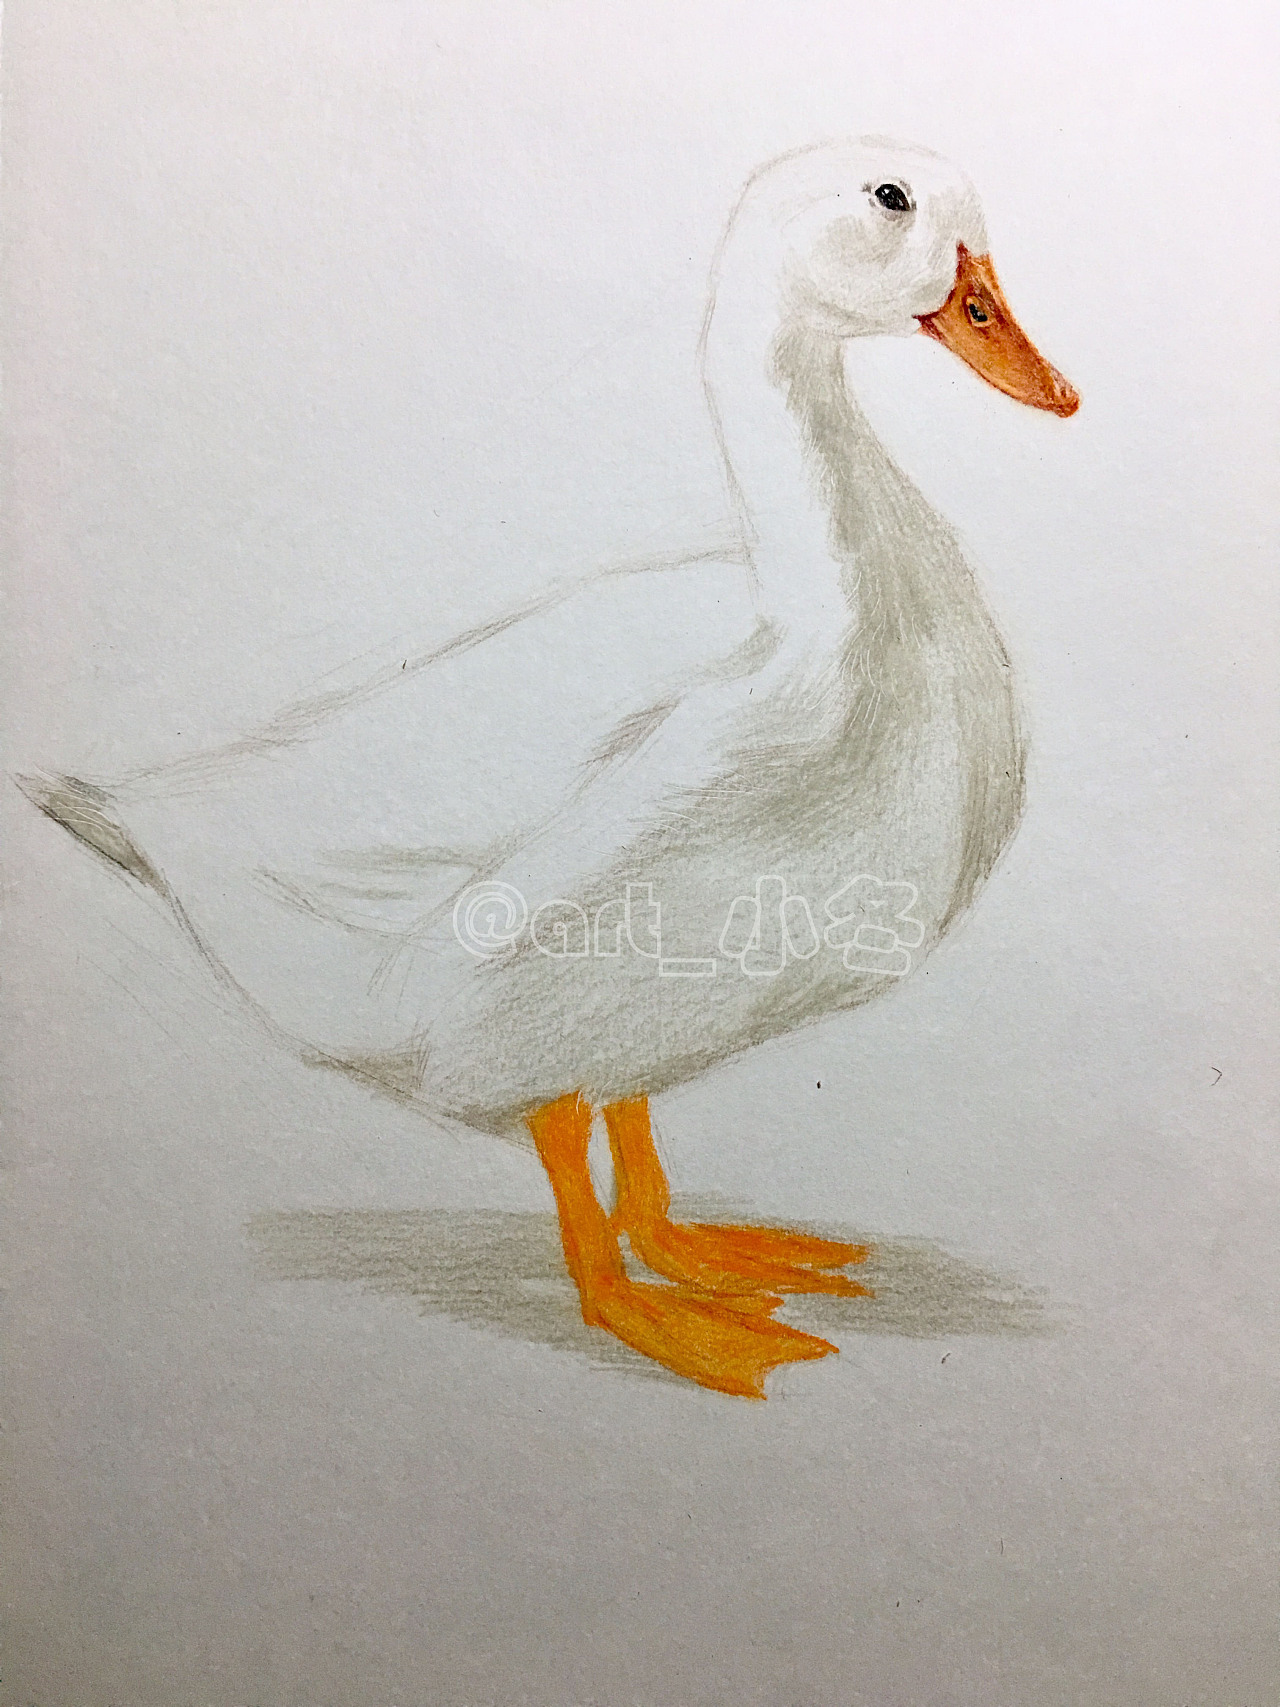 简笔画动物大全-怎么画鸭子的画法步骤图解 肉丁儿童网